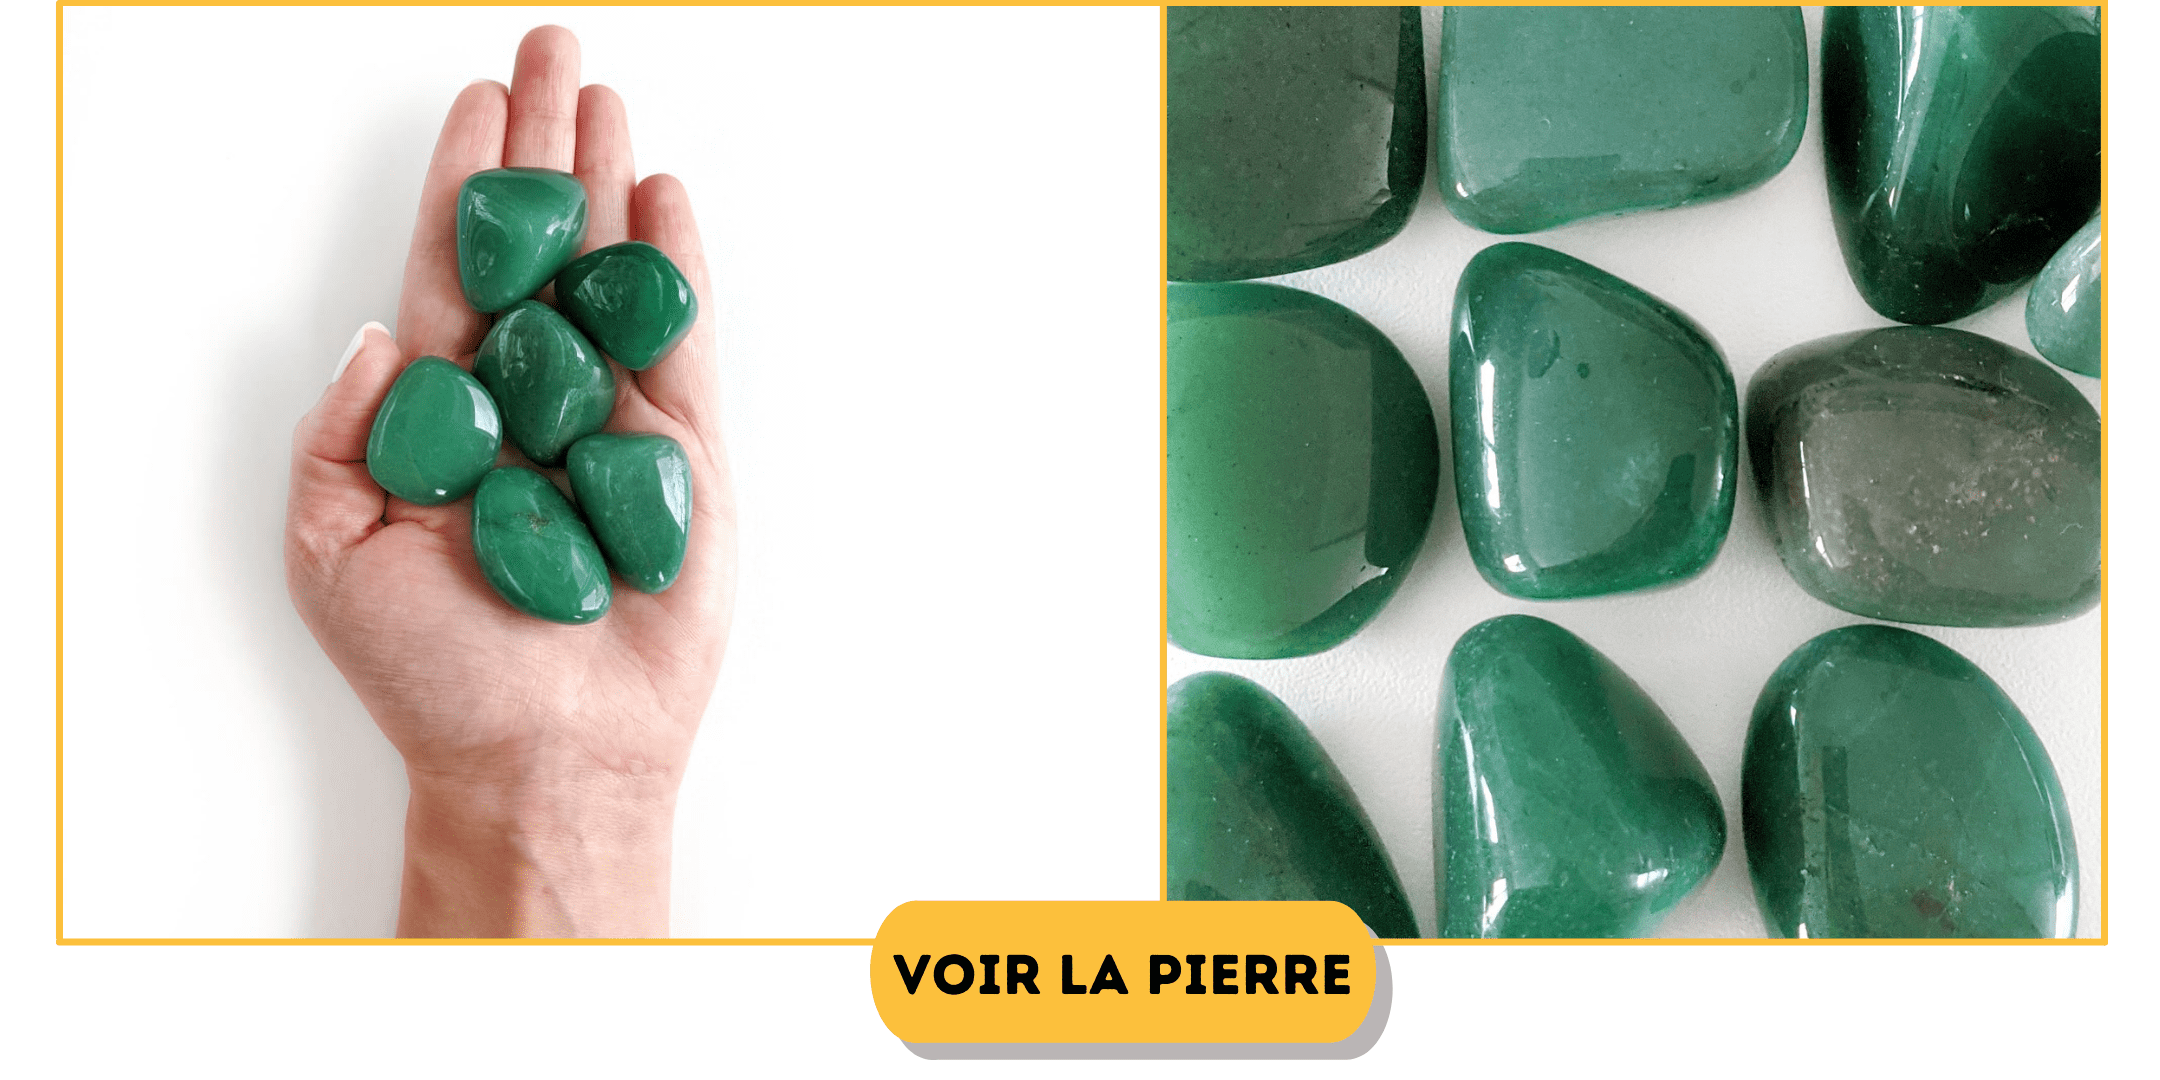 Les pierres vertes en Lithothérapie: Signification, bienfaits et Utili –  ANKORA